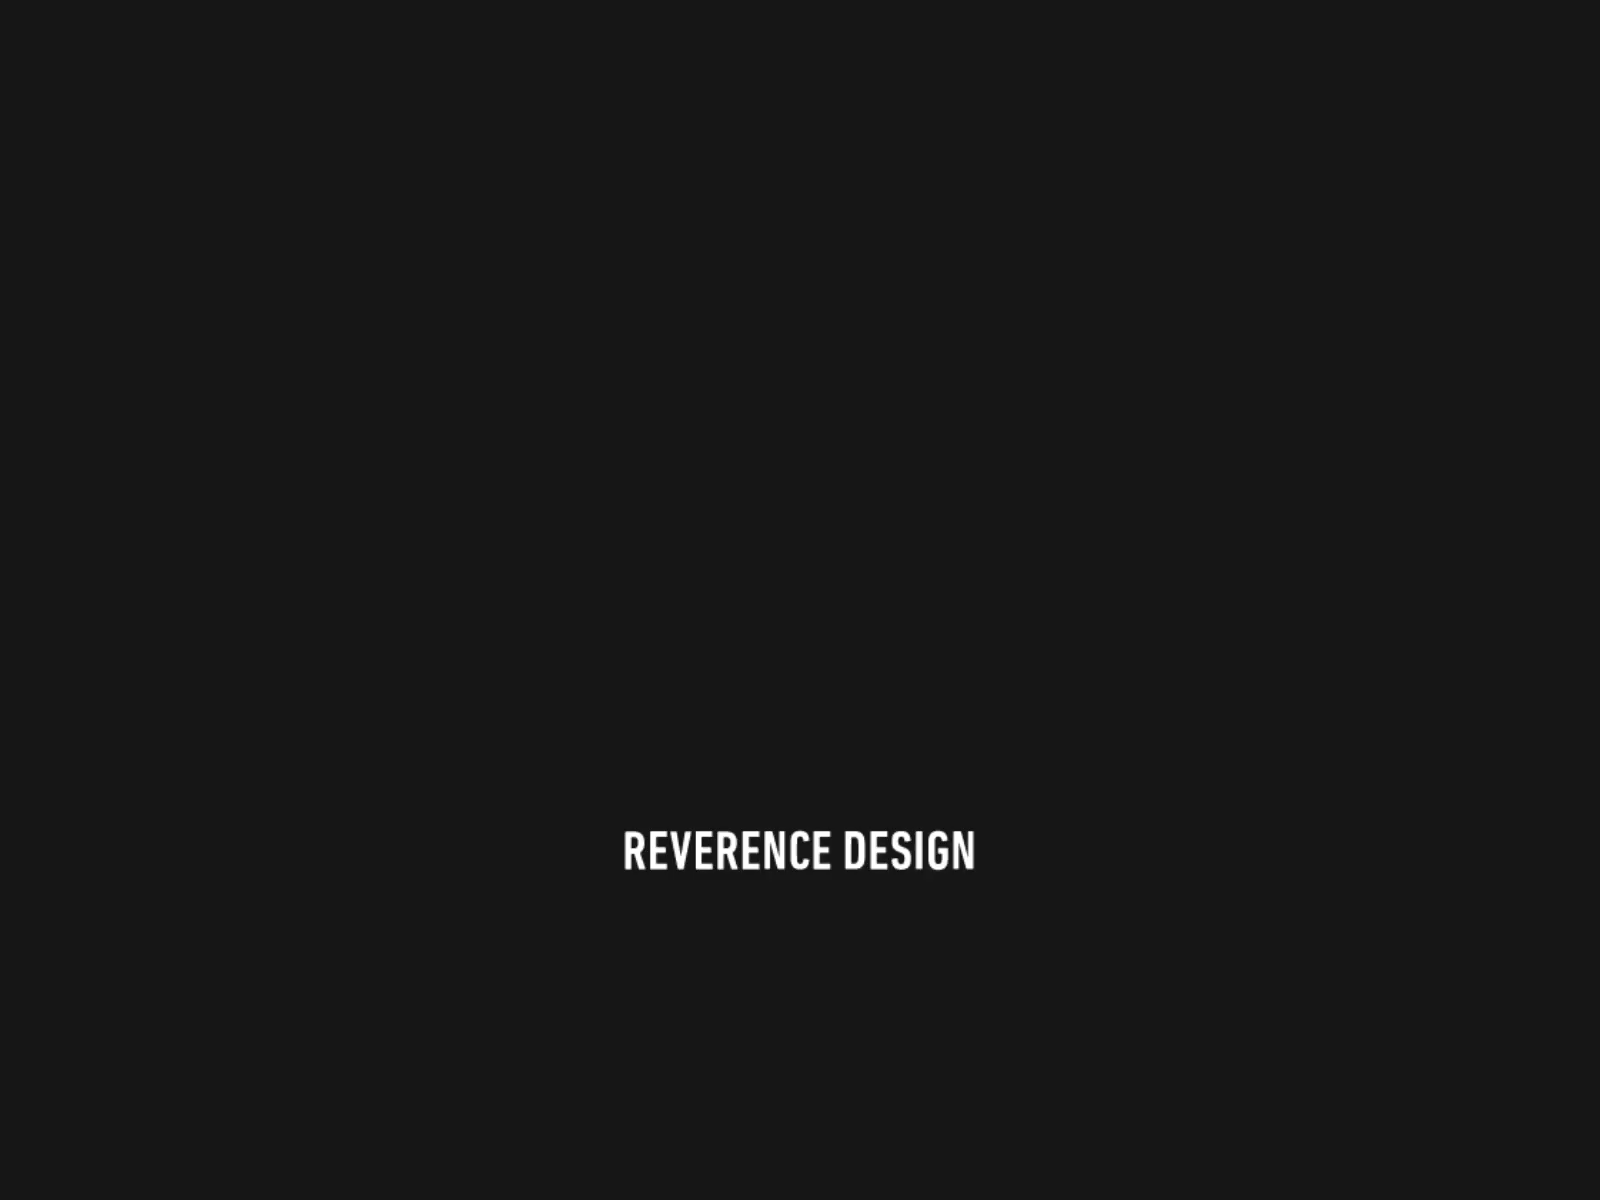 REVERENCE DESIGN - MOTION LOGO logo motion logo